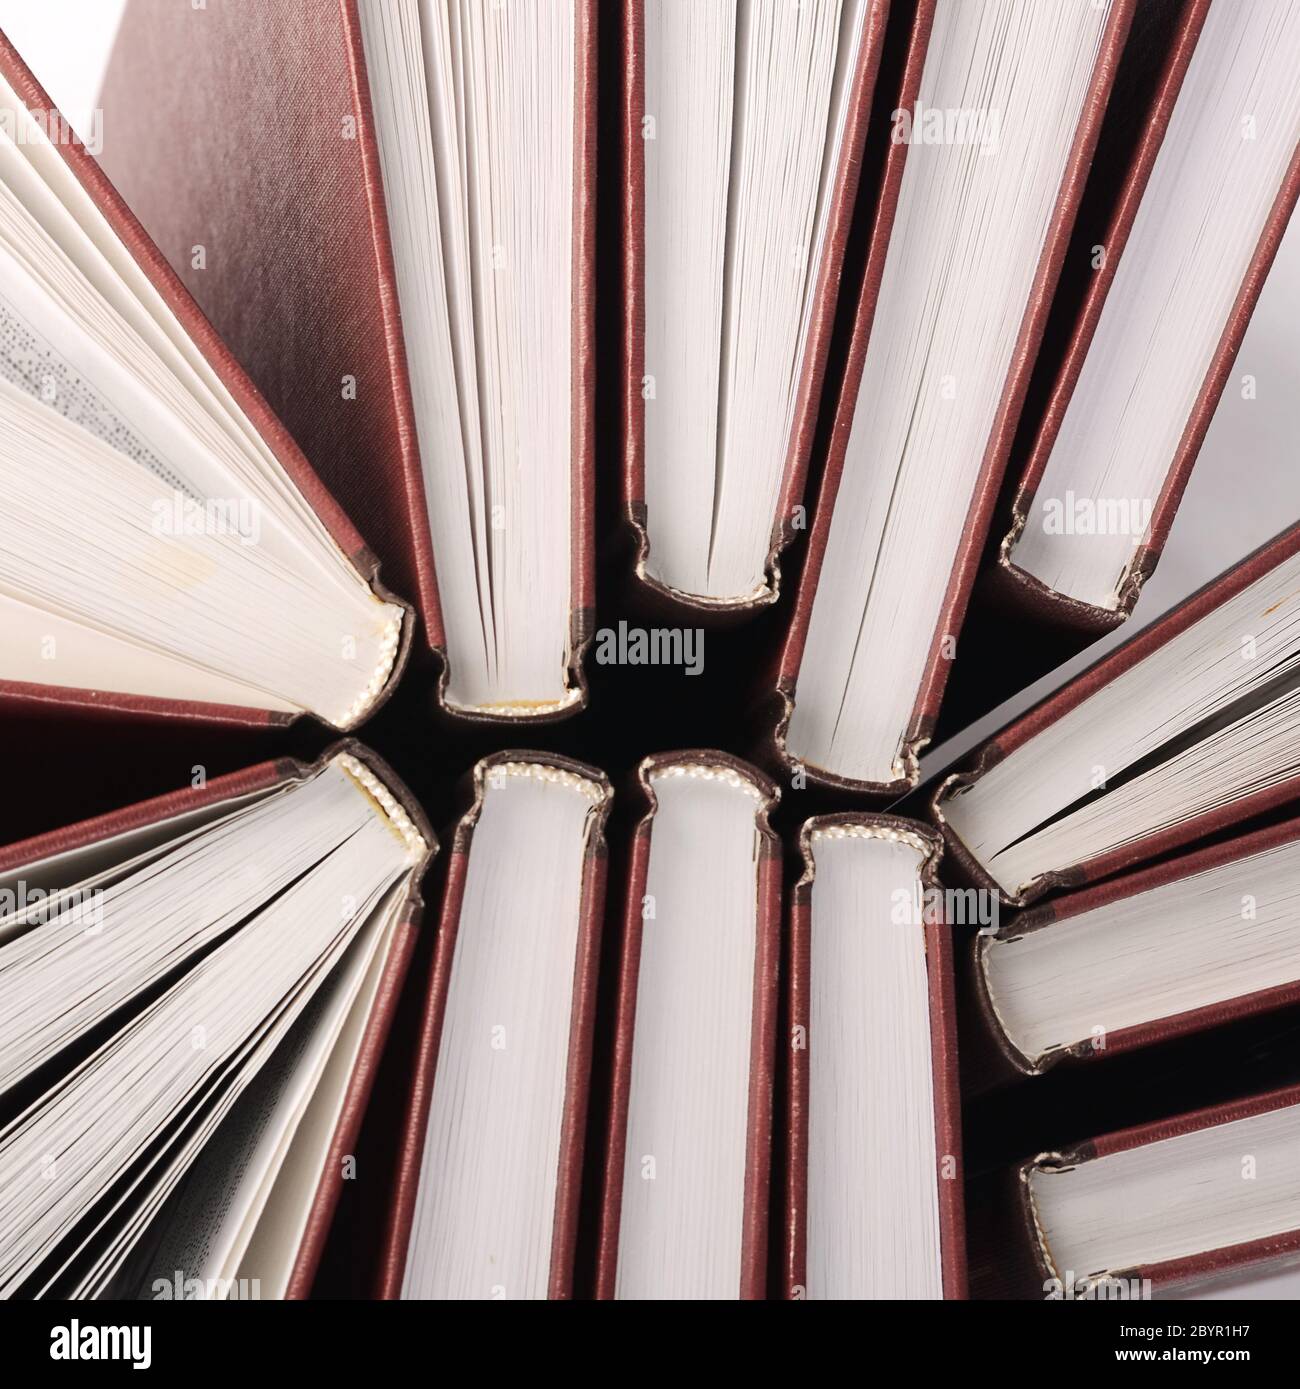 Stapel von Büchern als Hintergrund Stockfoto